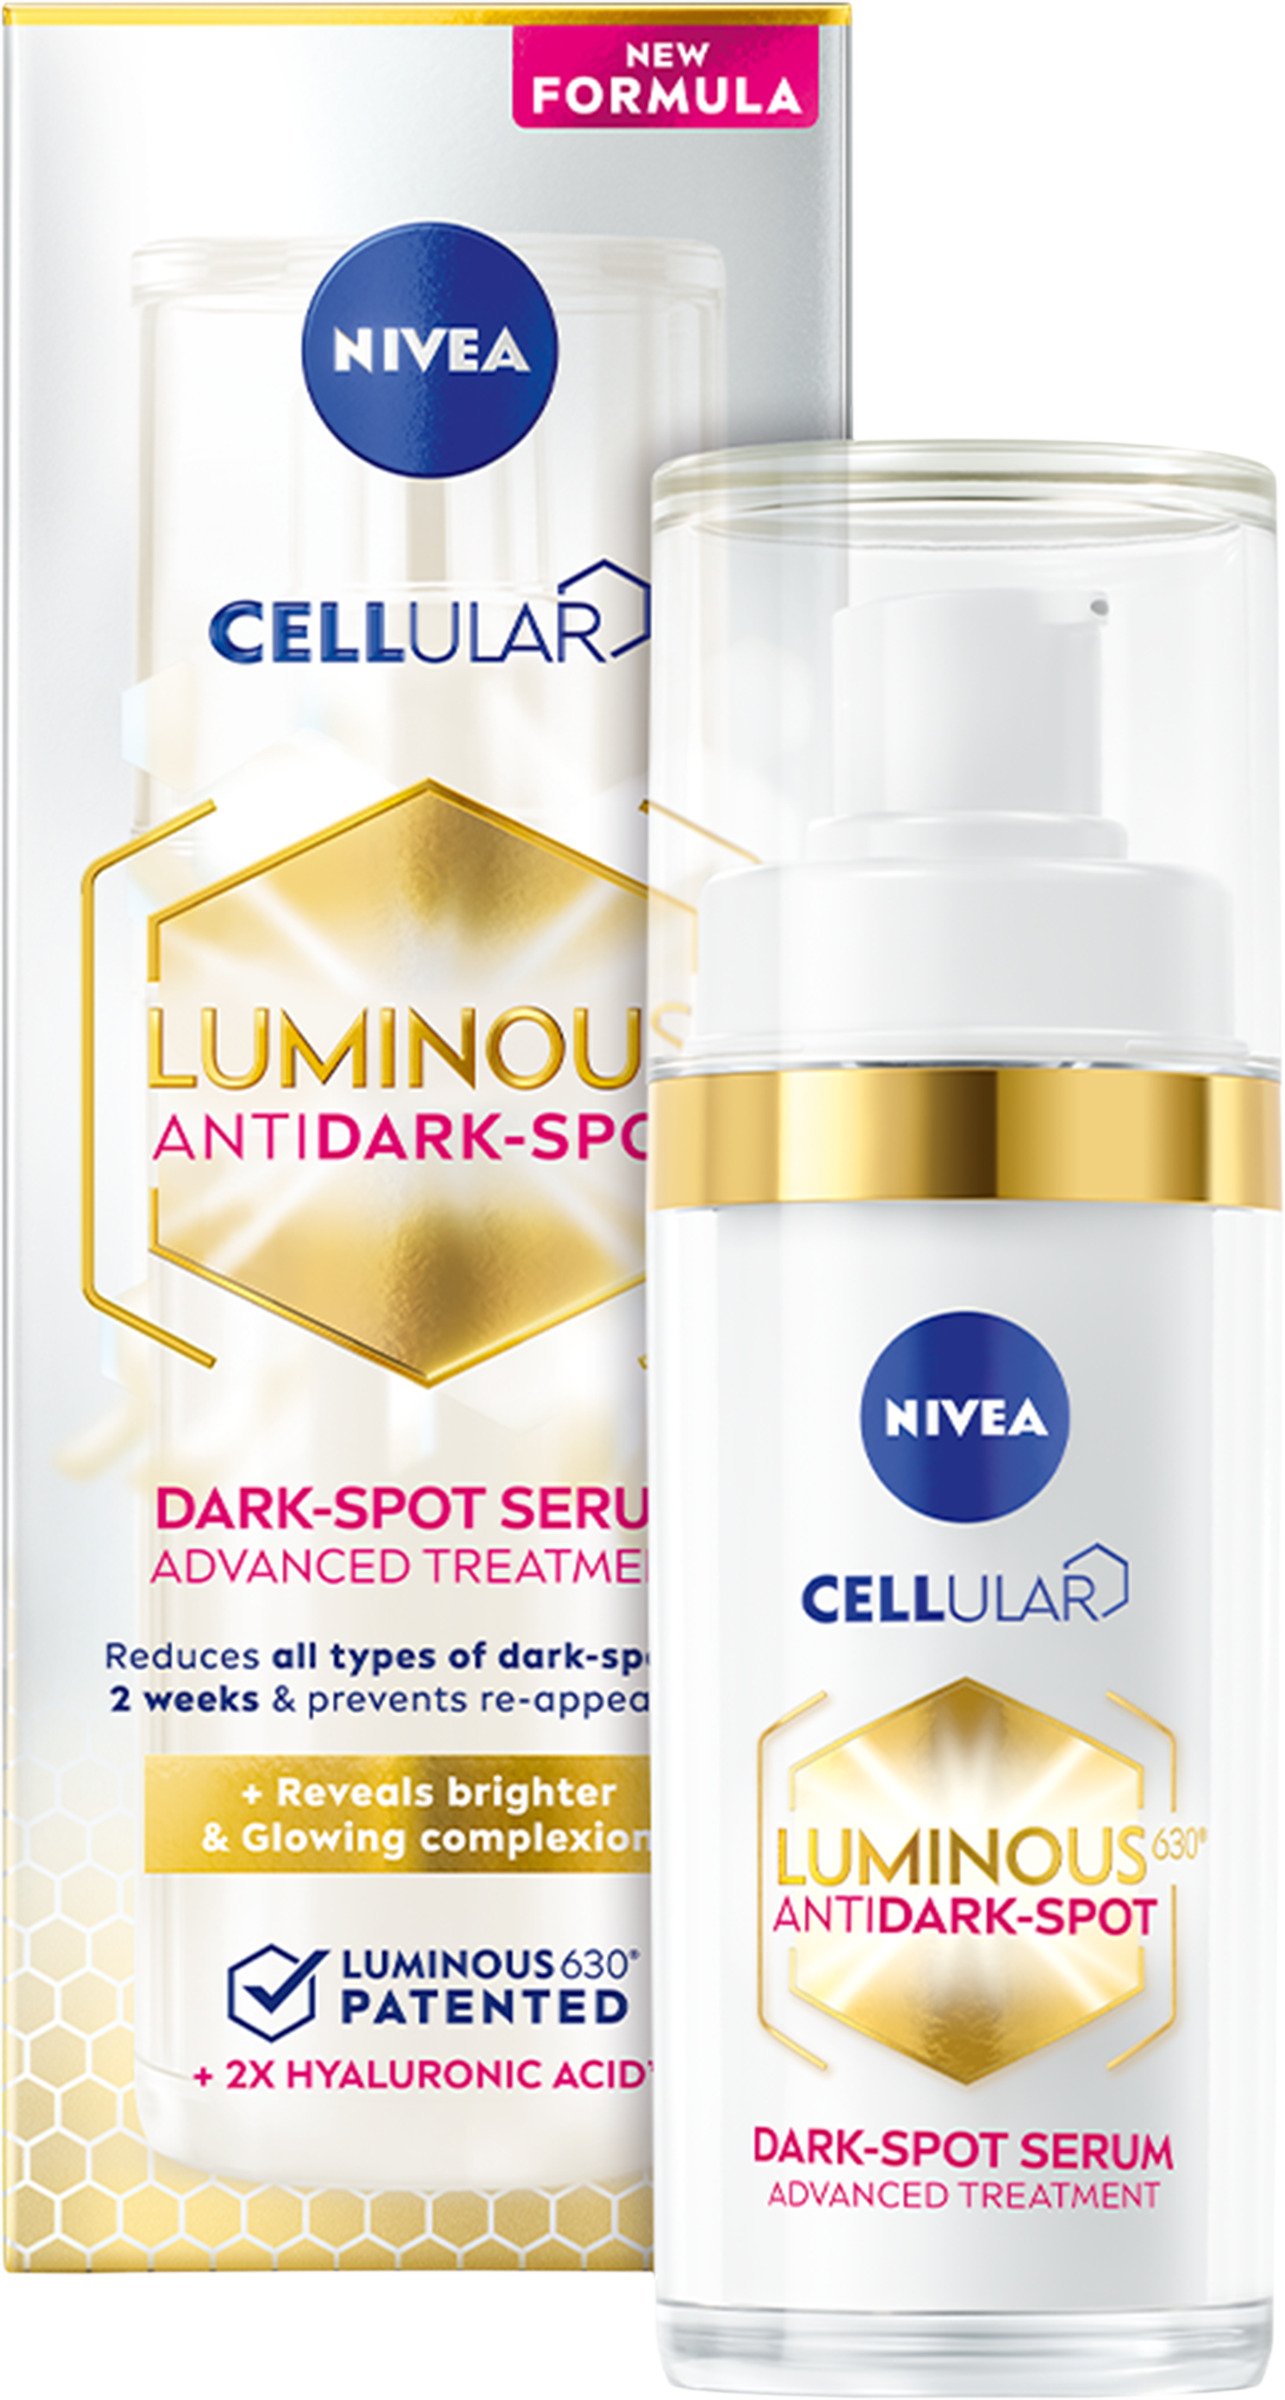 NIVEA Luminous 630 Anti Dark Spot Serum 30ml